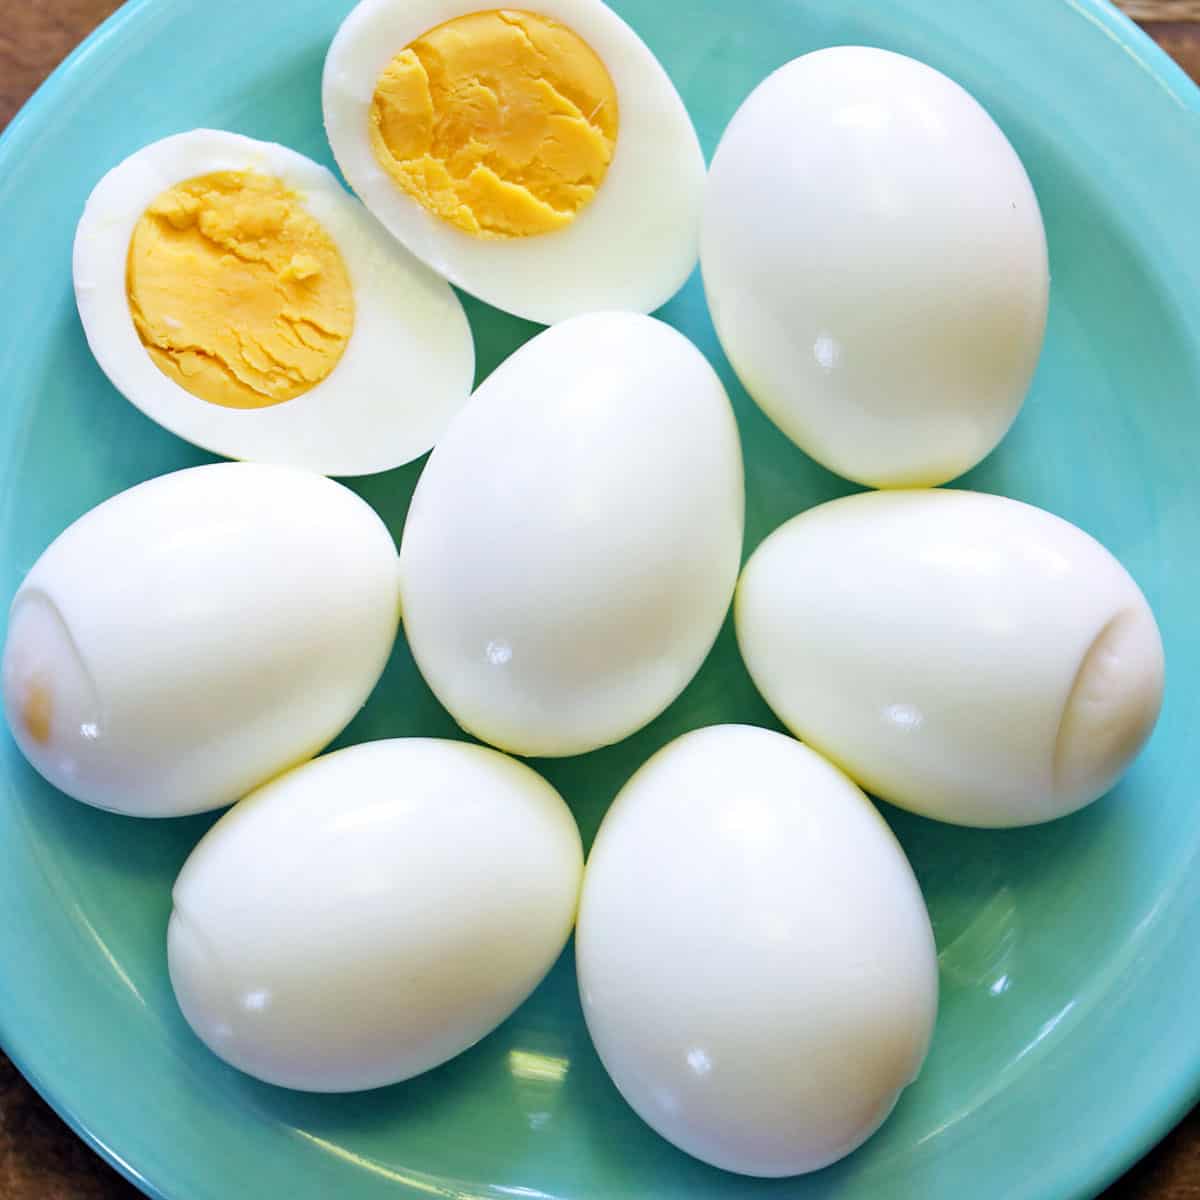 Huevos duros servidos en un plato turquesa.